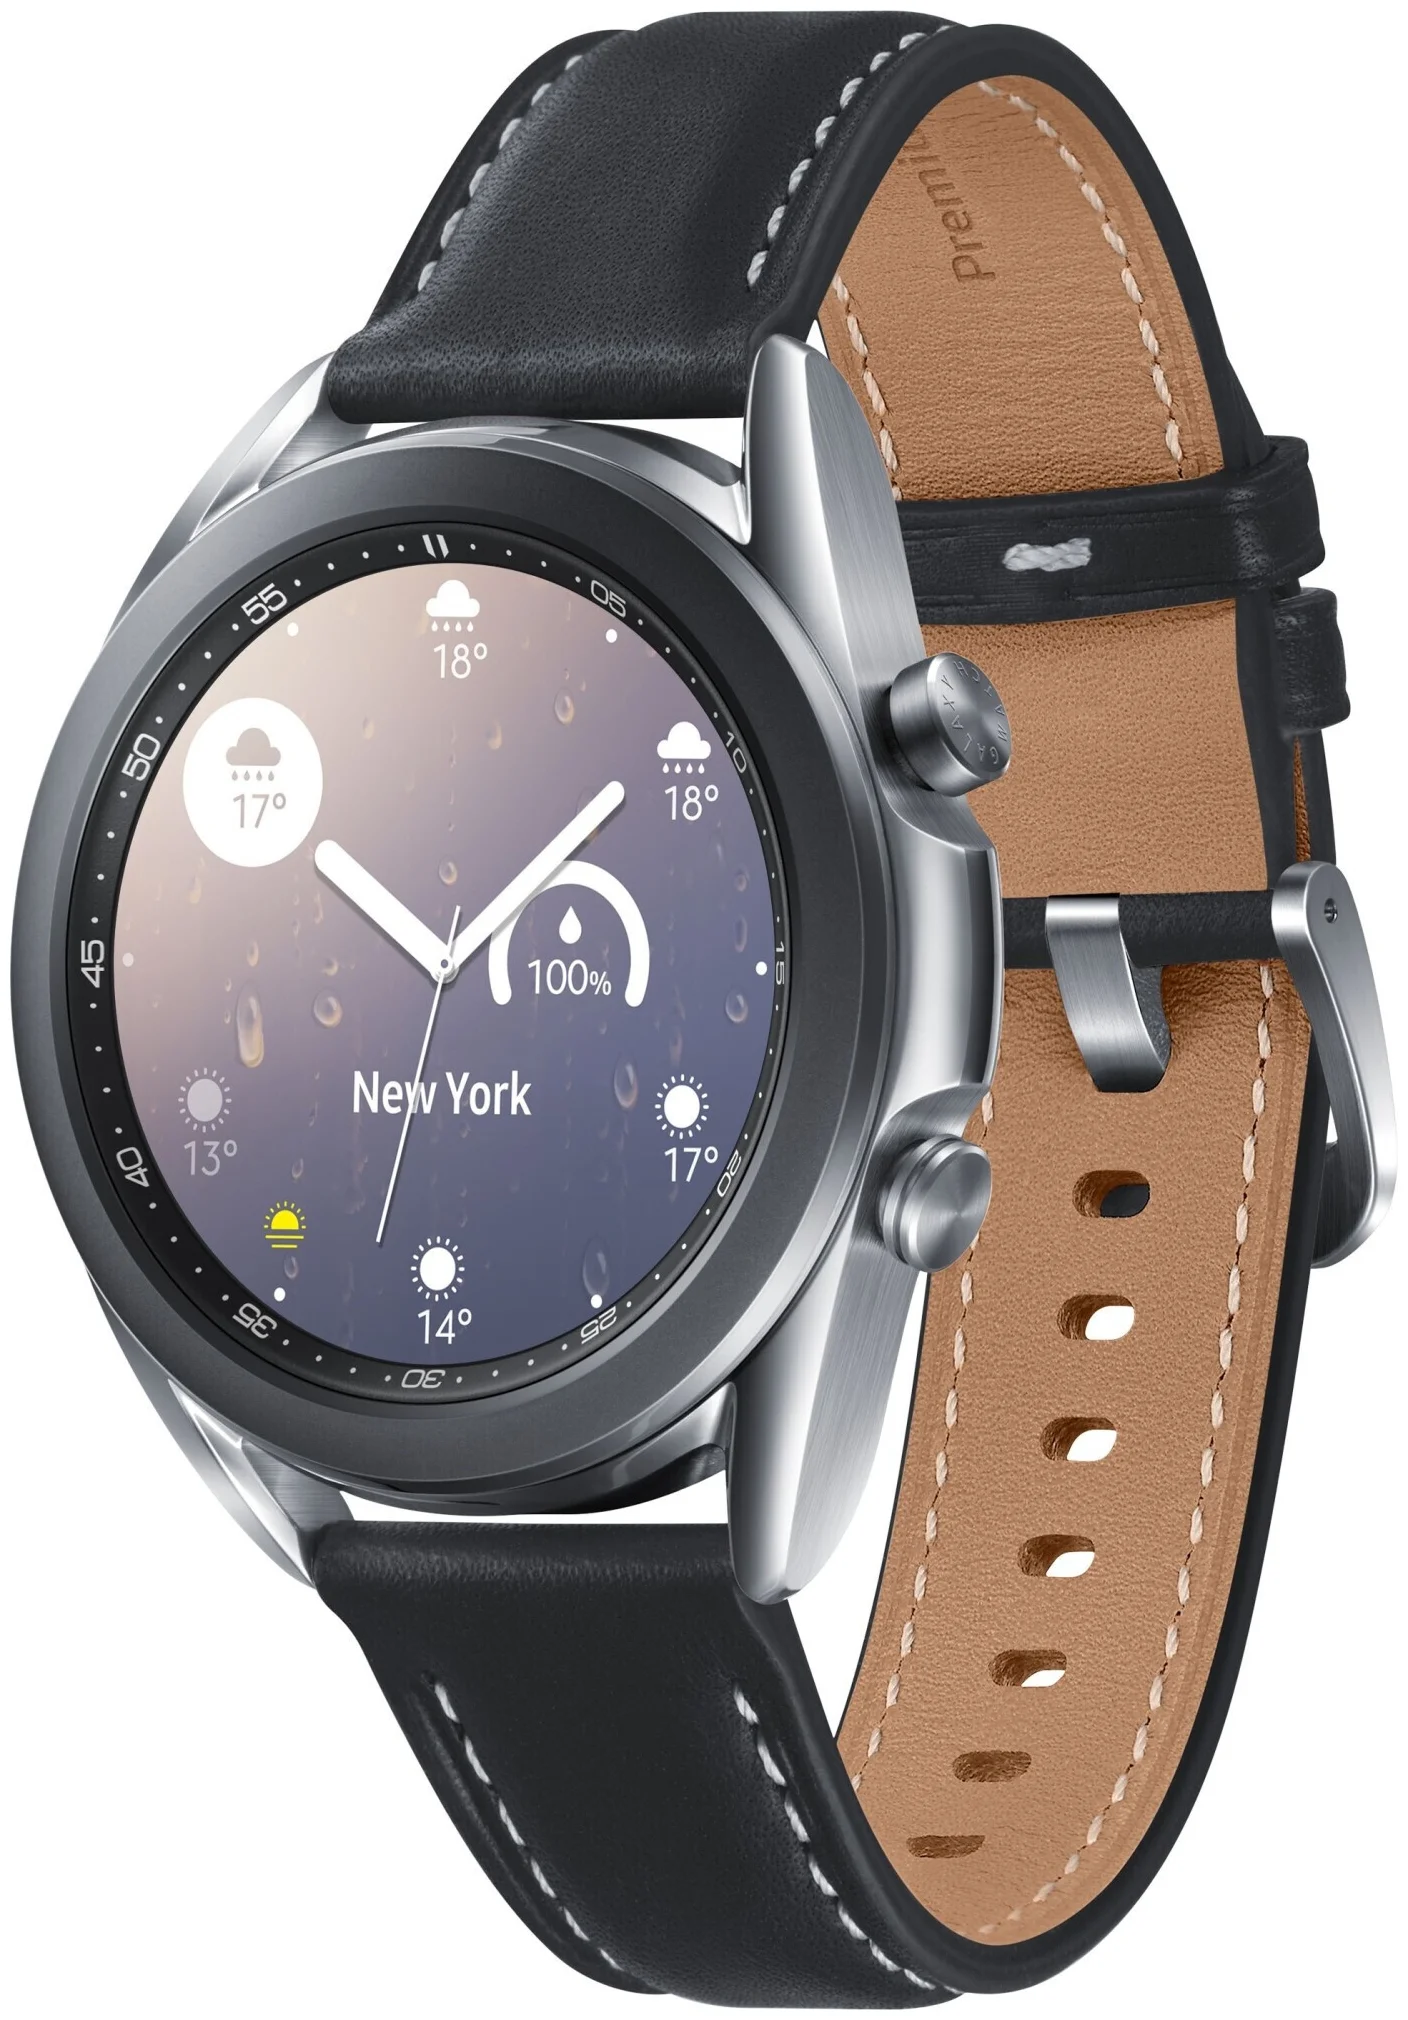 Samsung Galaxy Watch3 41мм - датчики: акселерометр, гироскоп, высотомер, пульсометр с постоянным измереним пульса, ЭКГ, тонометр